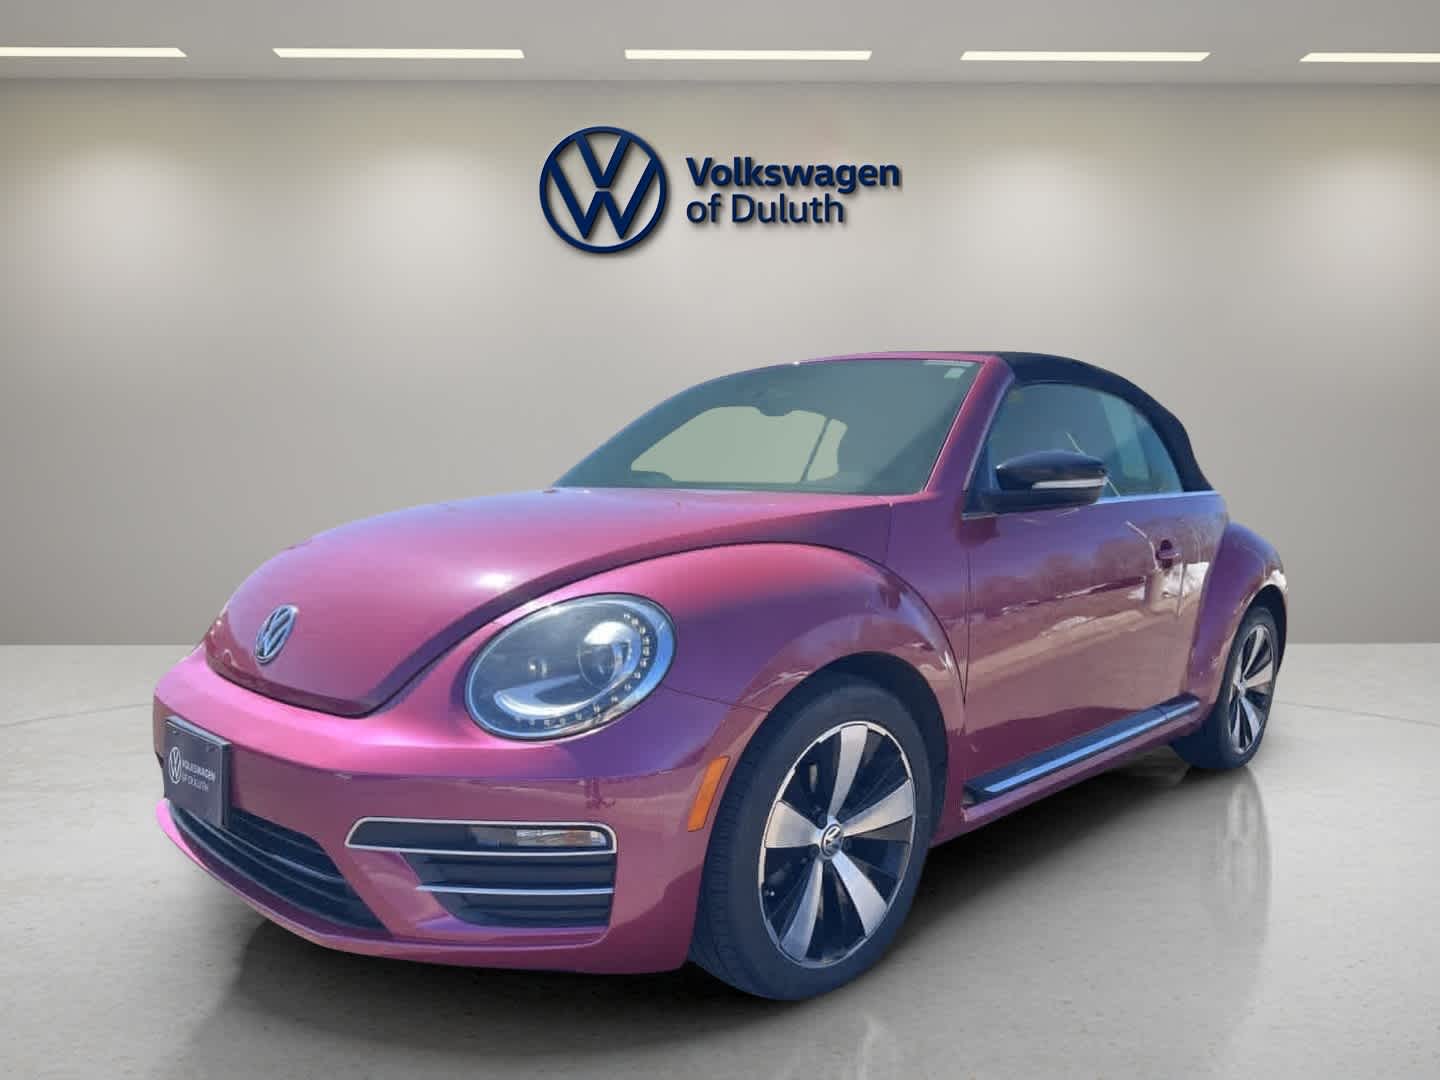 2017 Volkswagen Beetle #PinkBeetle Convertible